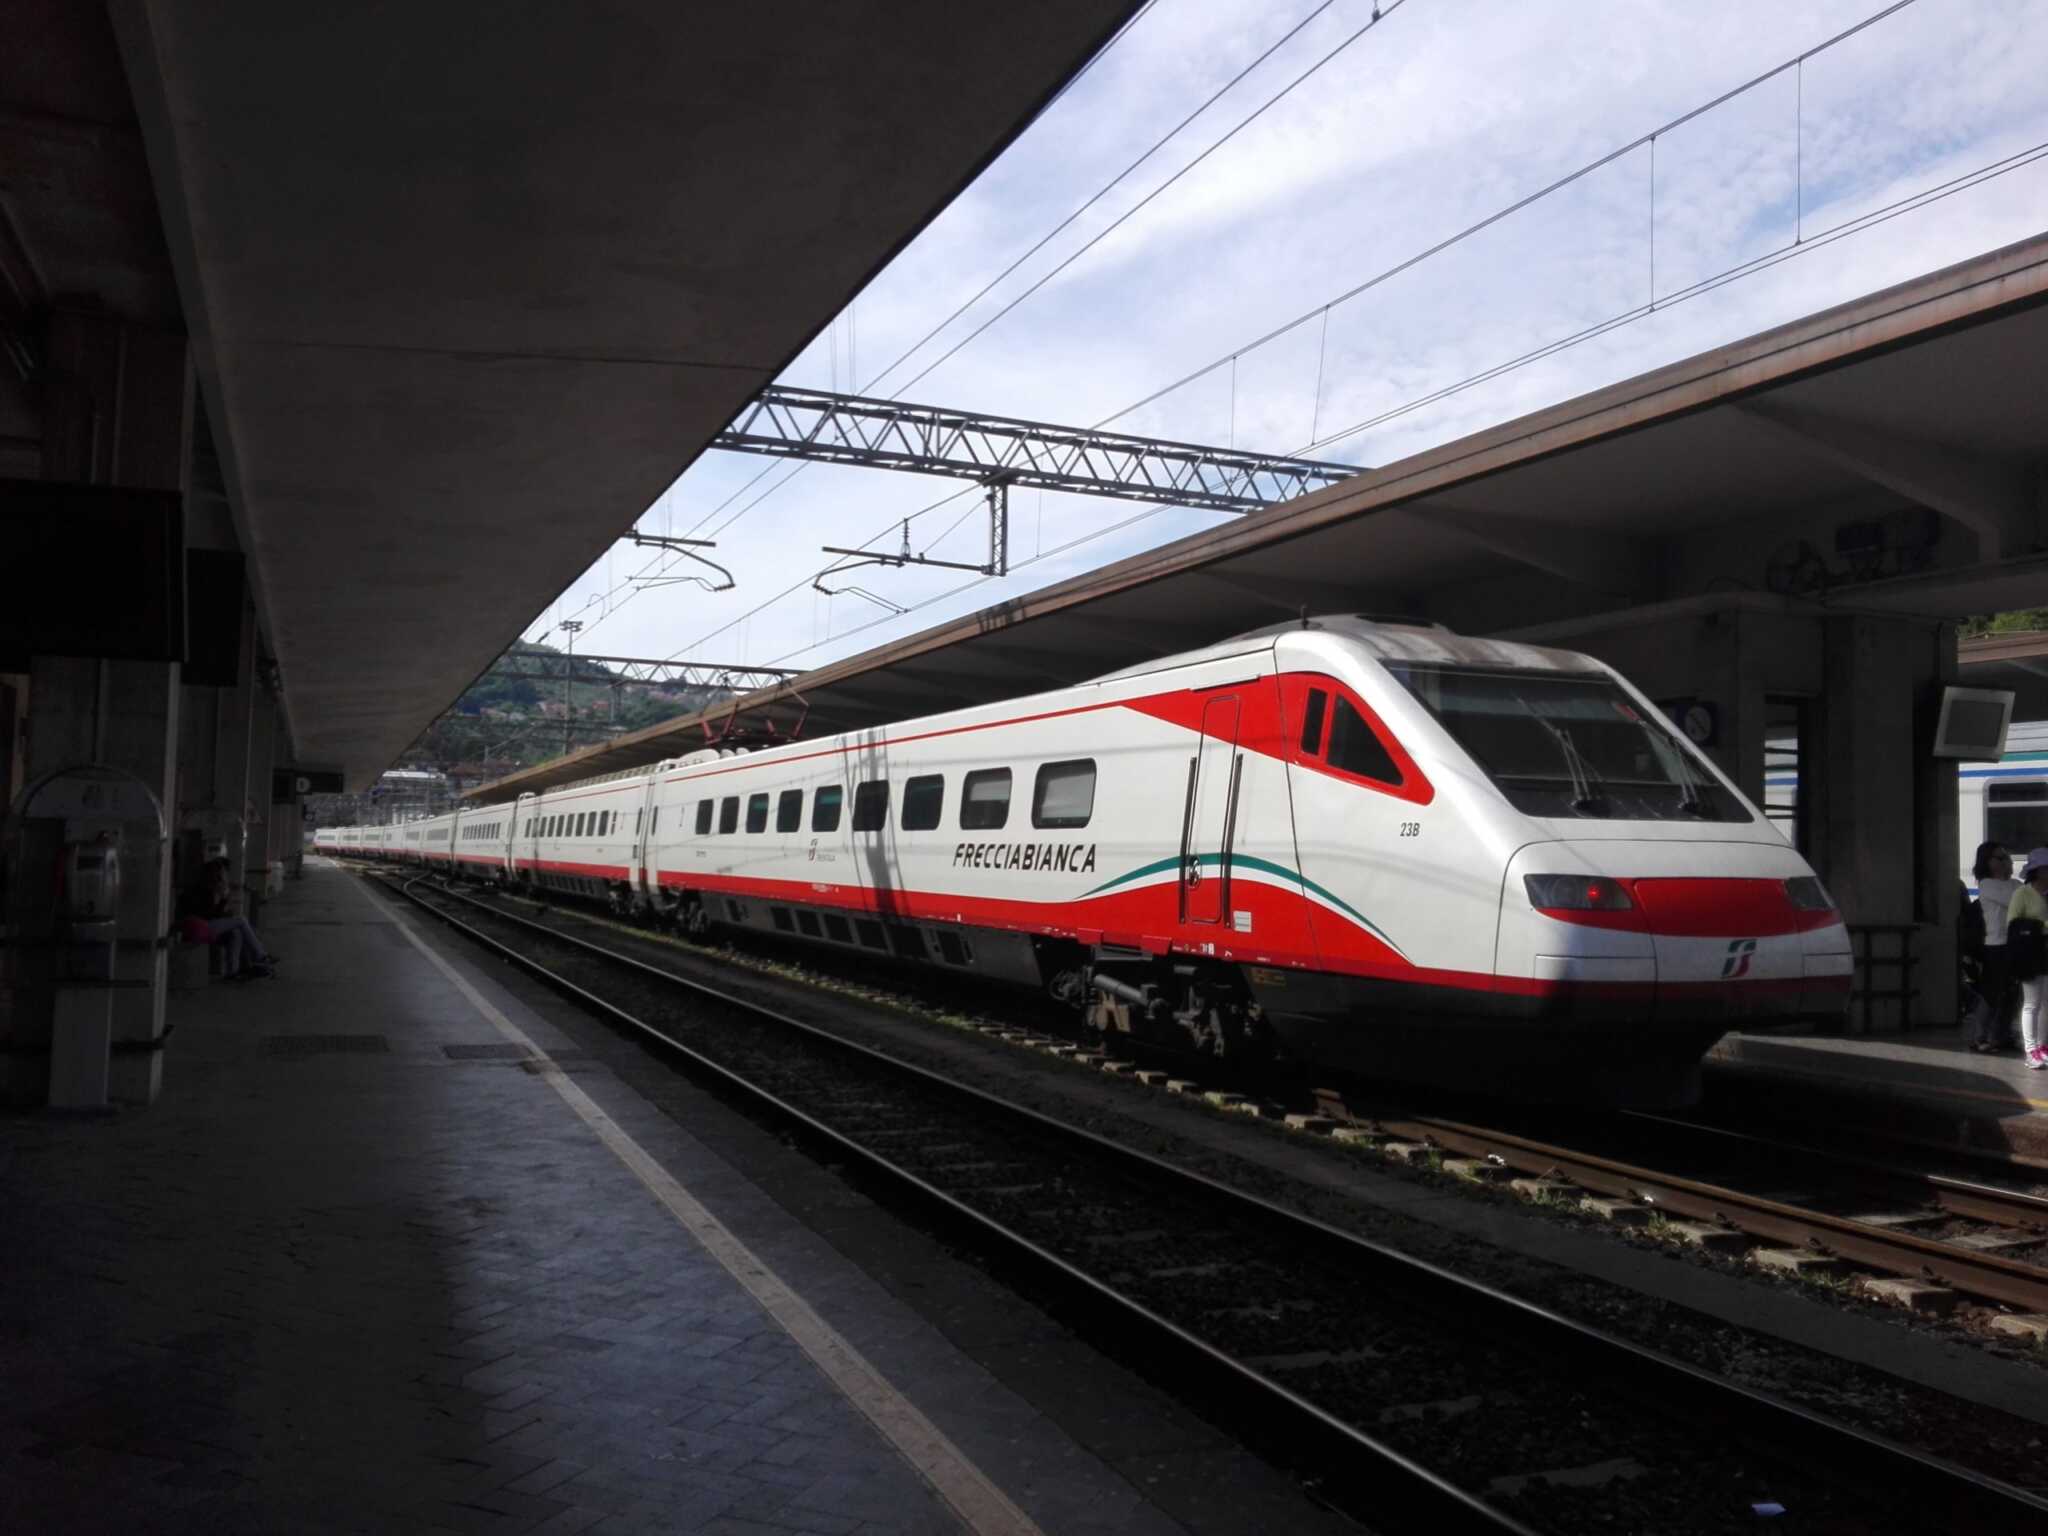 Terremoto in provincia de L’Aquila, sospese le linee ferroviarie: l’Alta Velocità Roma-Napoli procede con limitazione